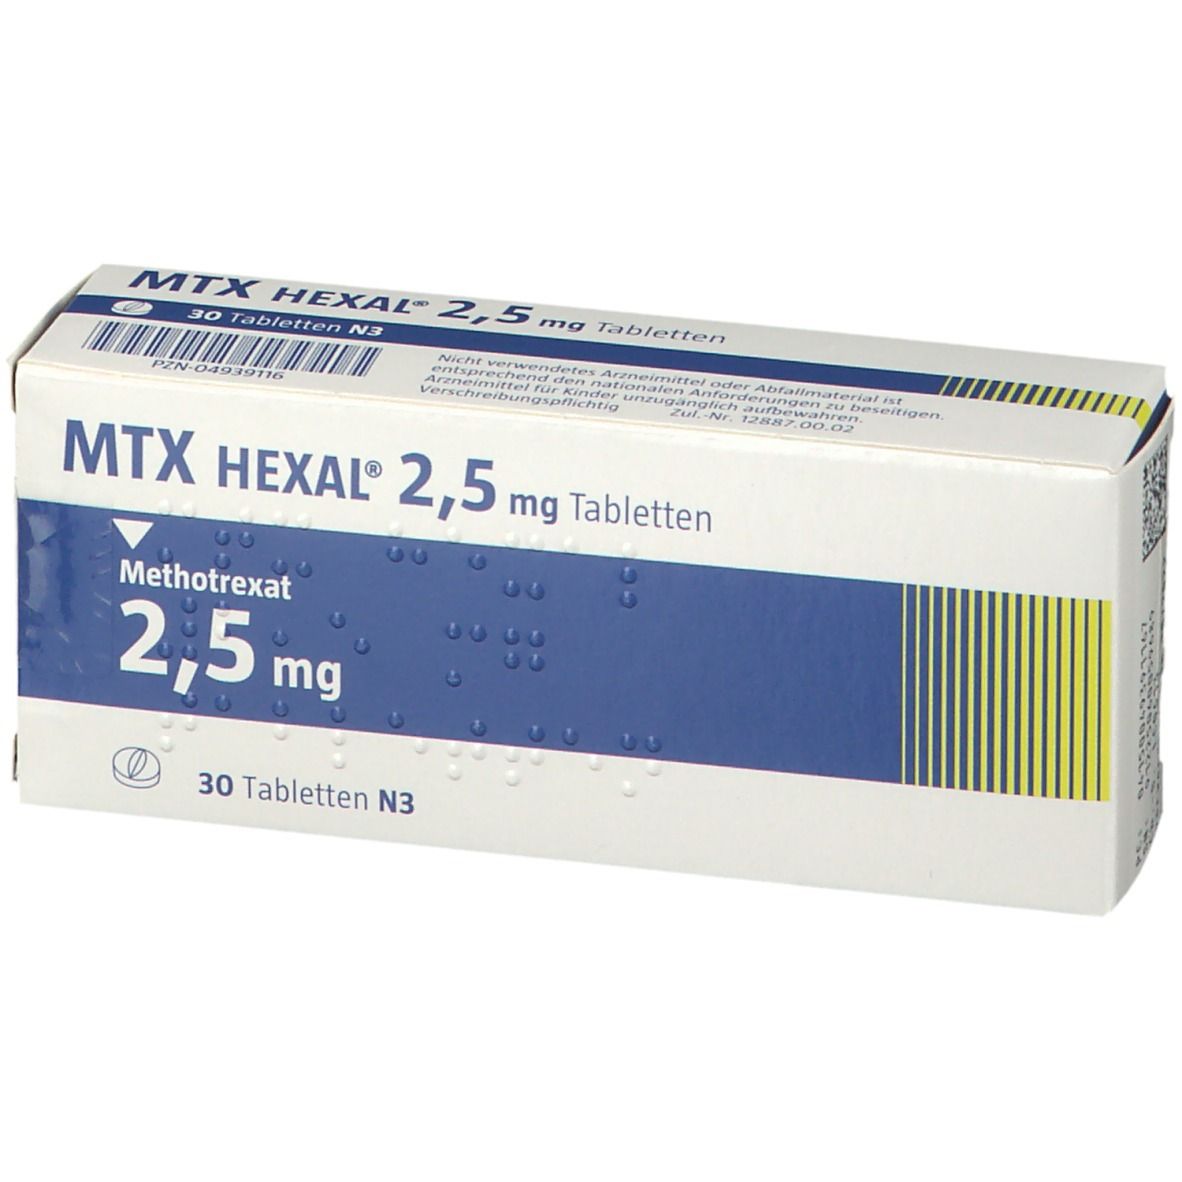 MTX HEXAL® 2,5 mg